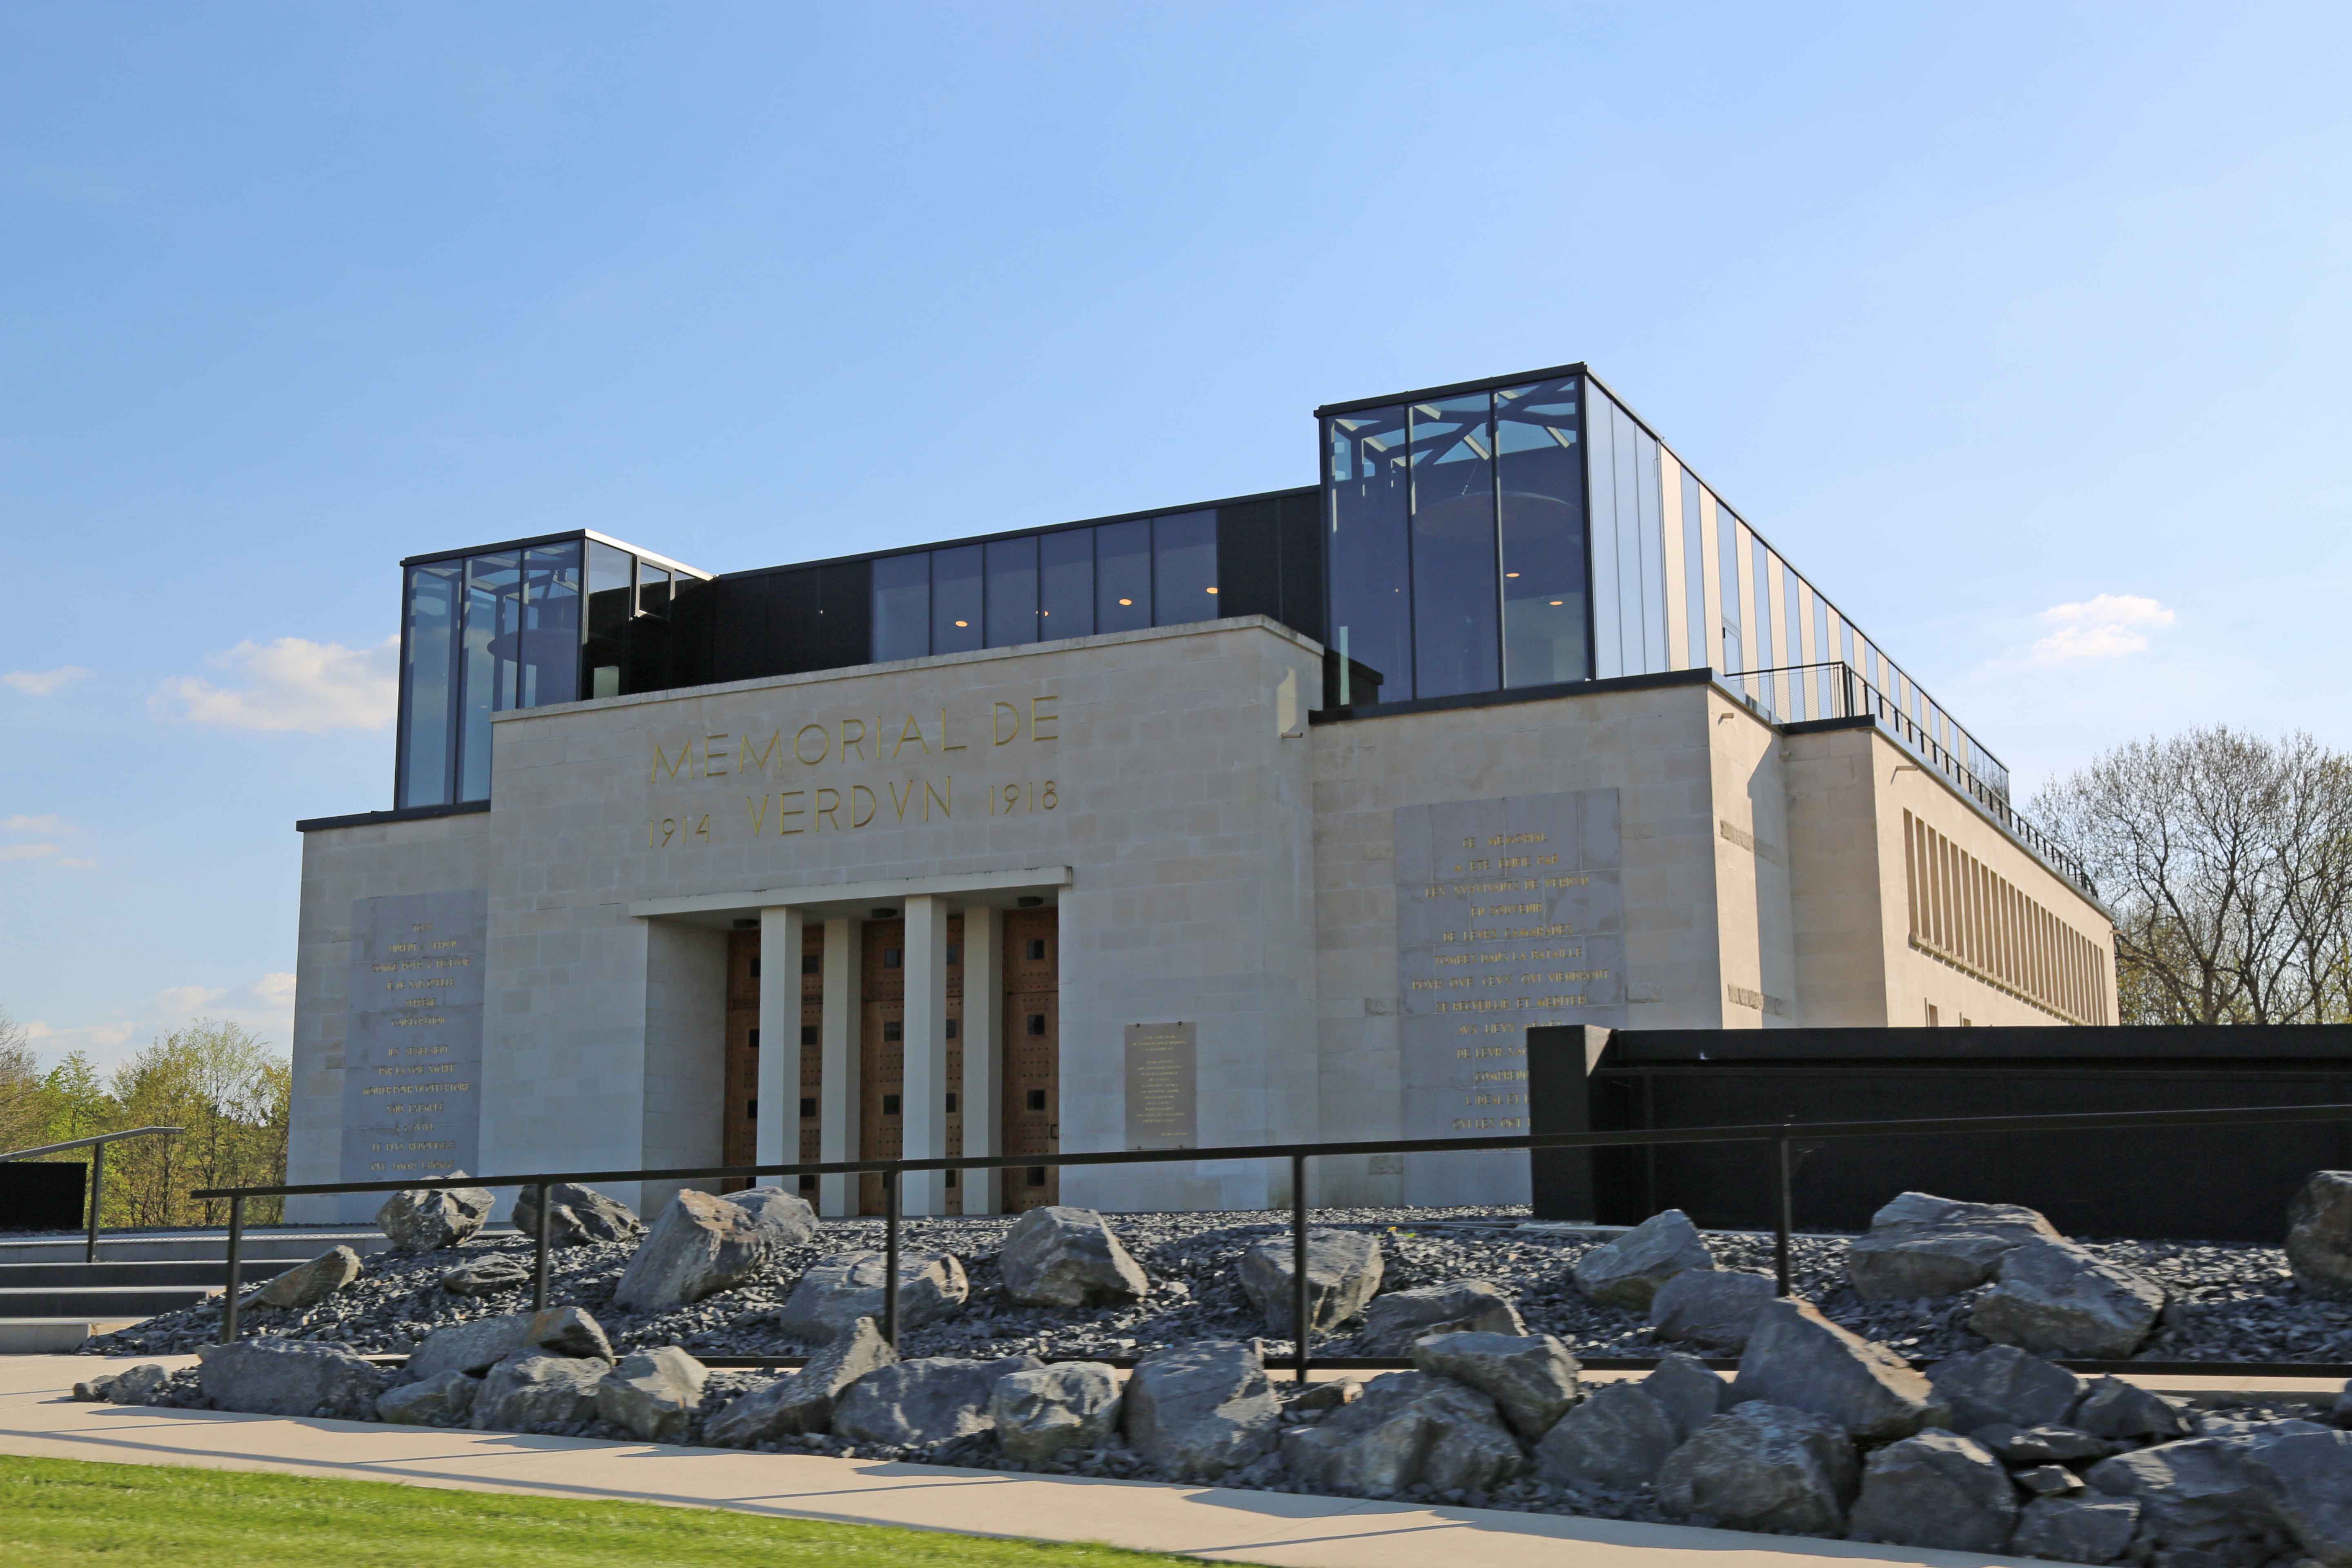 Agrandi et modernisé, le monument d’origine est valorisé (©Memorial Verdun)